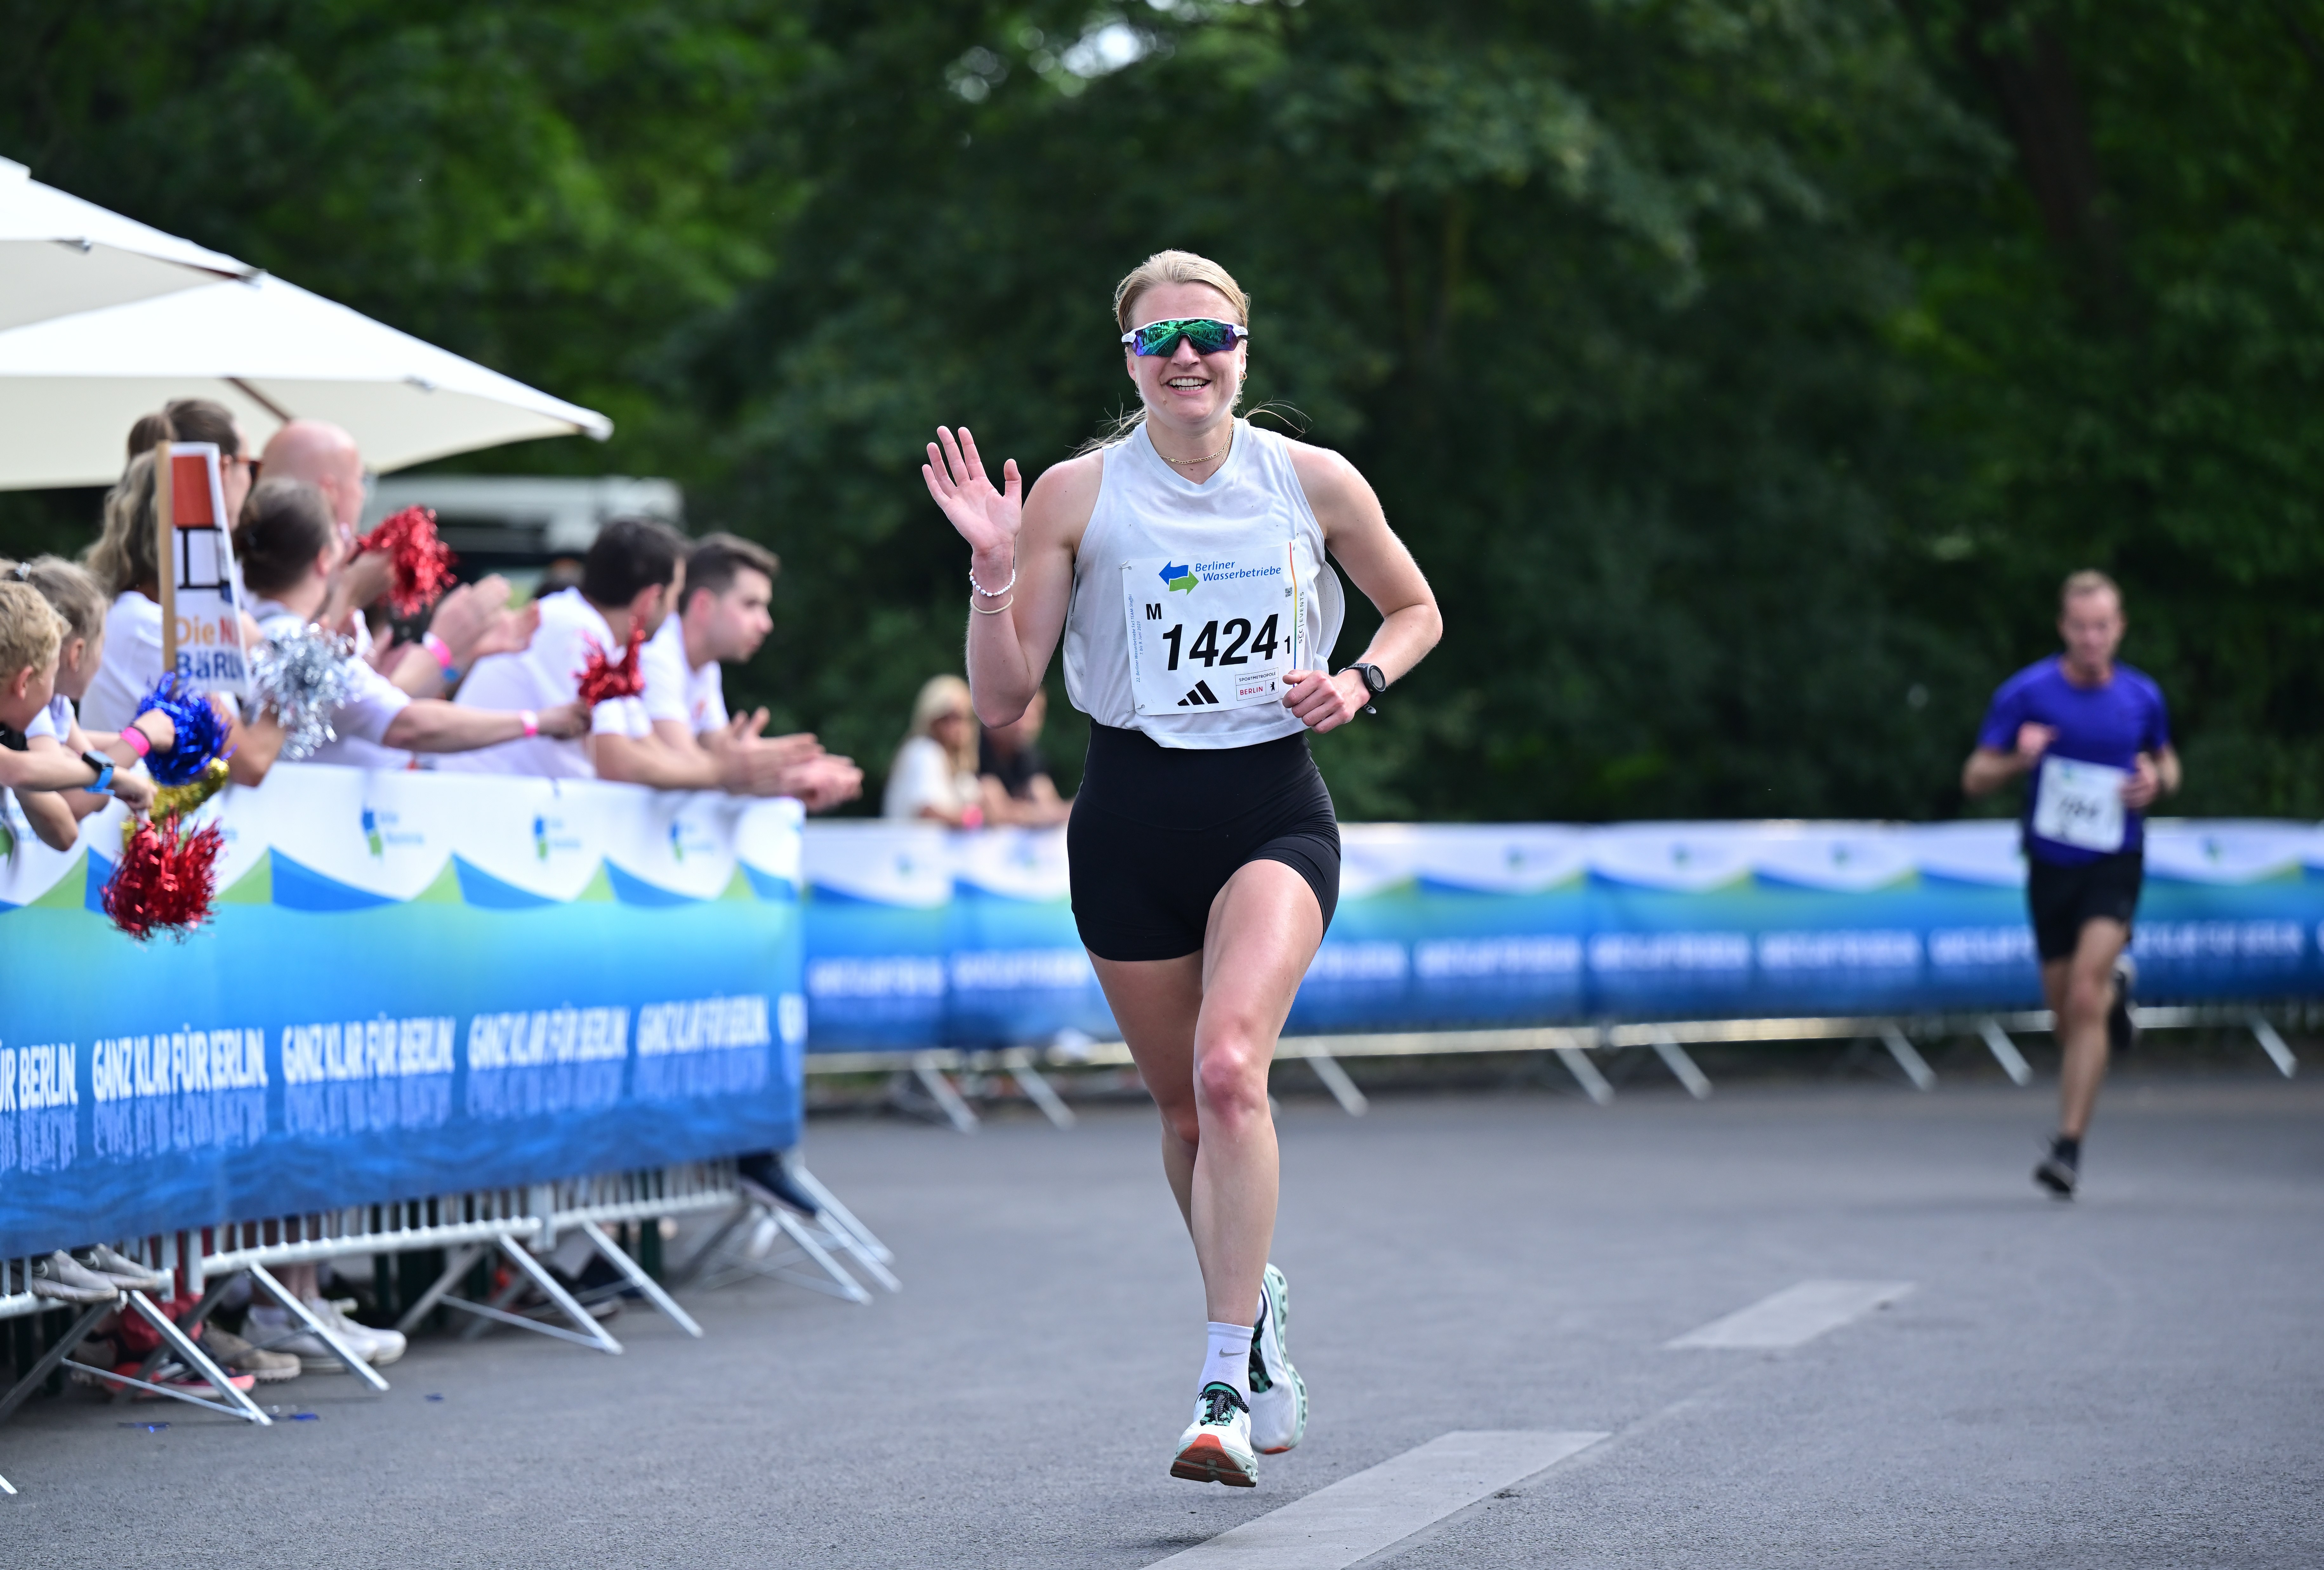 5x5 km TEAM-Staffel: Weiblich Läuferin passiert Zuschauer und winkt in die Kamera @ SCC EVENTS / Petko Beier